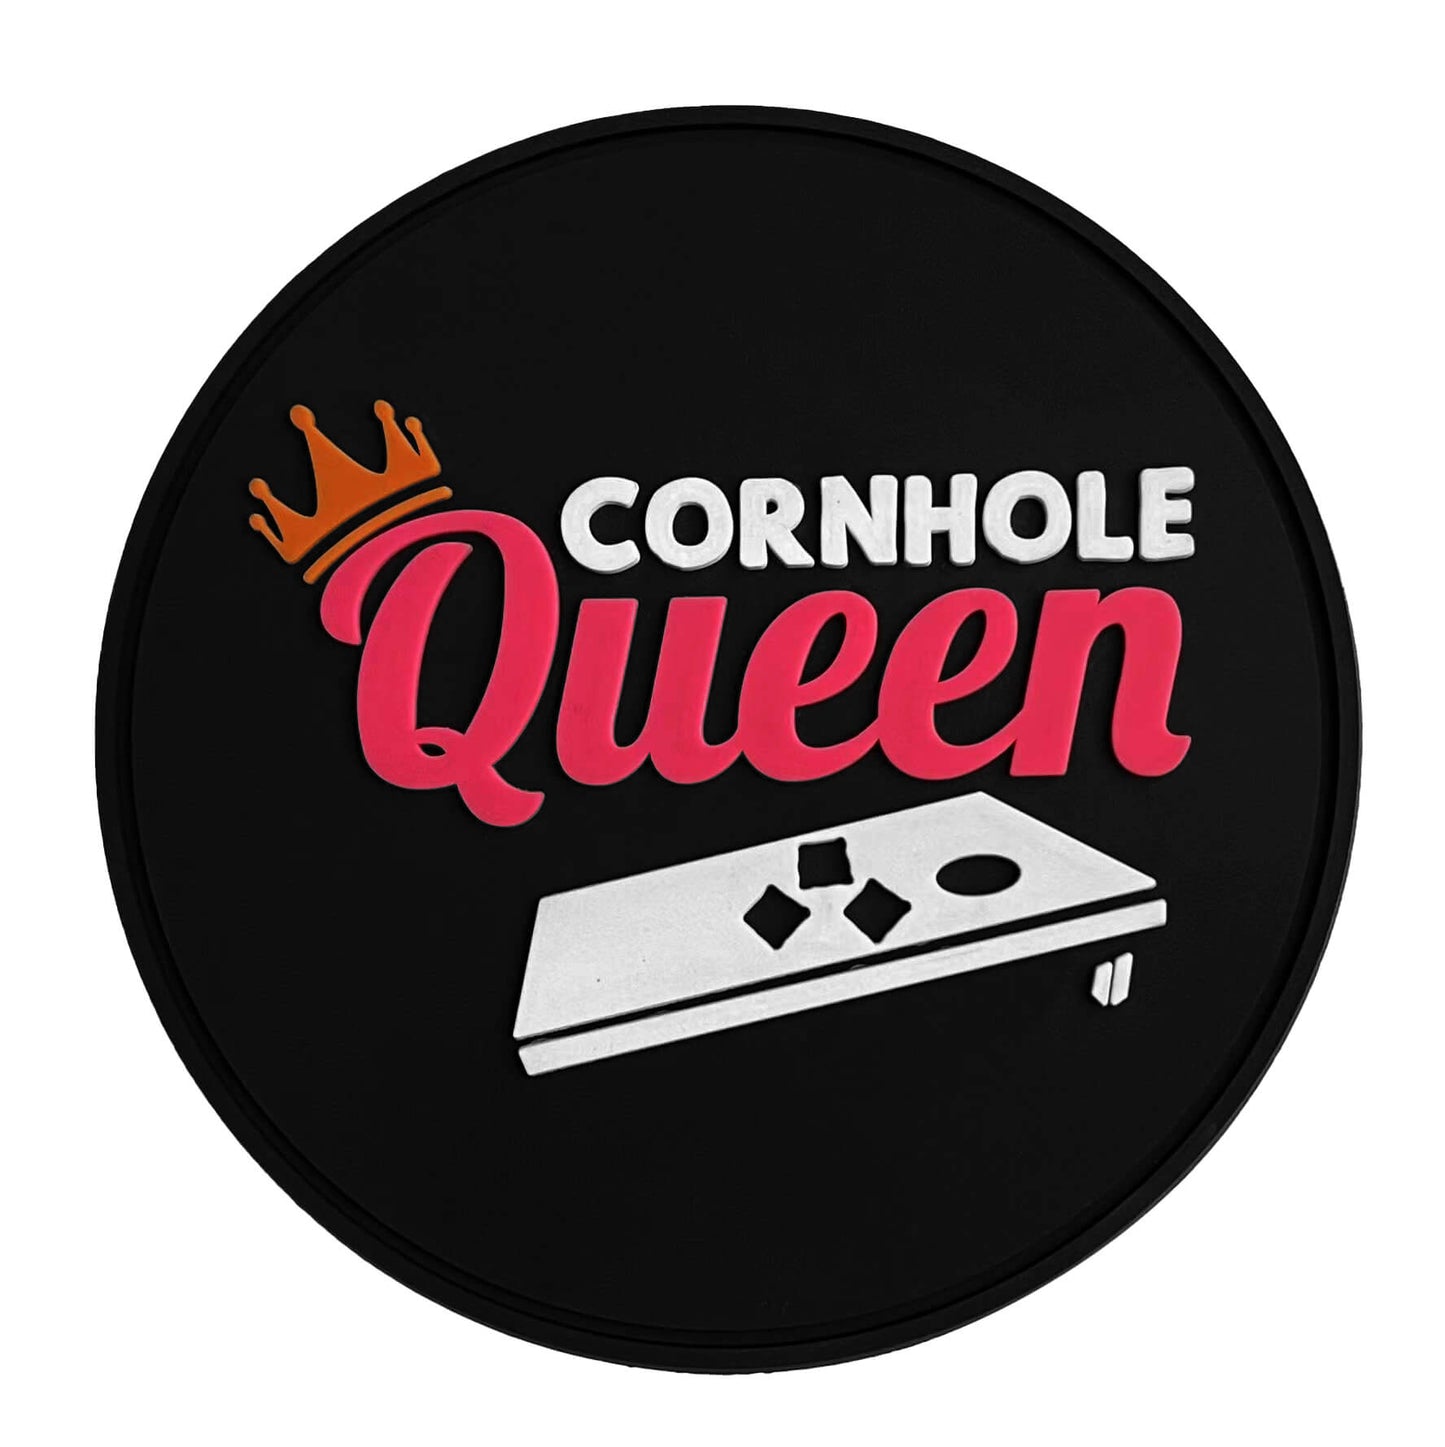 A Cornhole Queen (yas!)